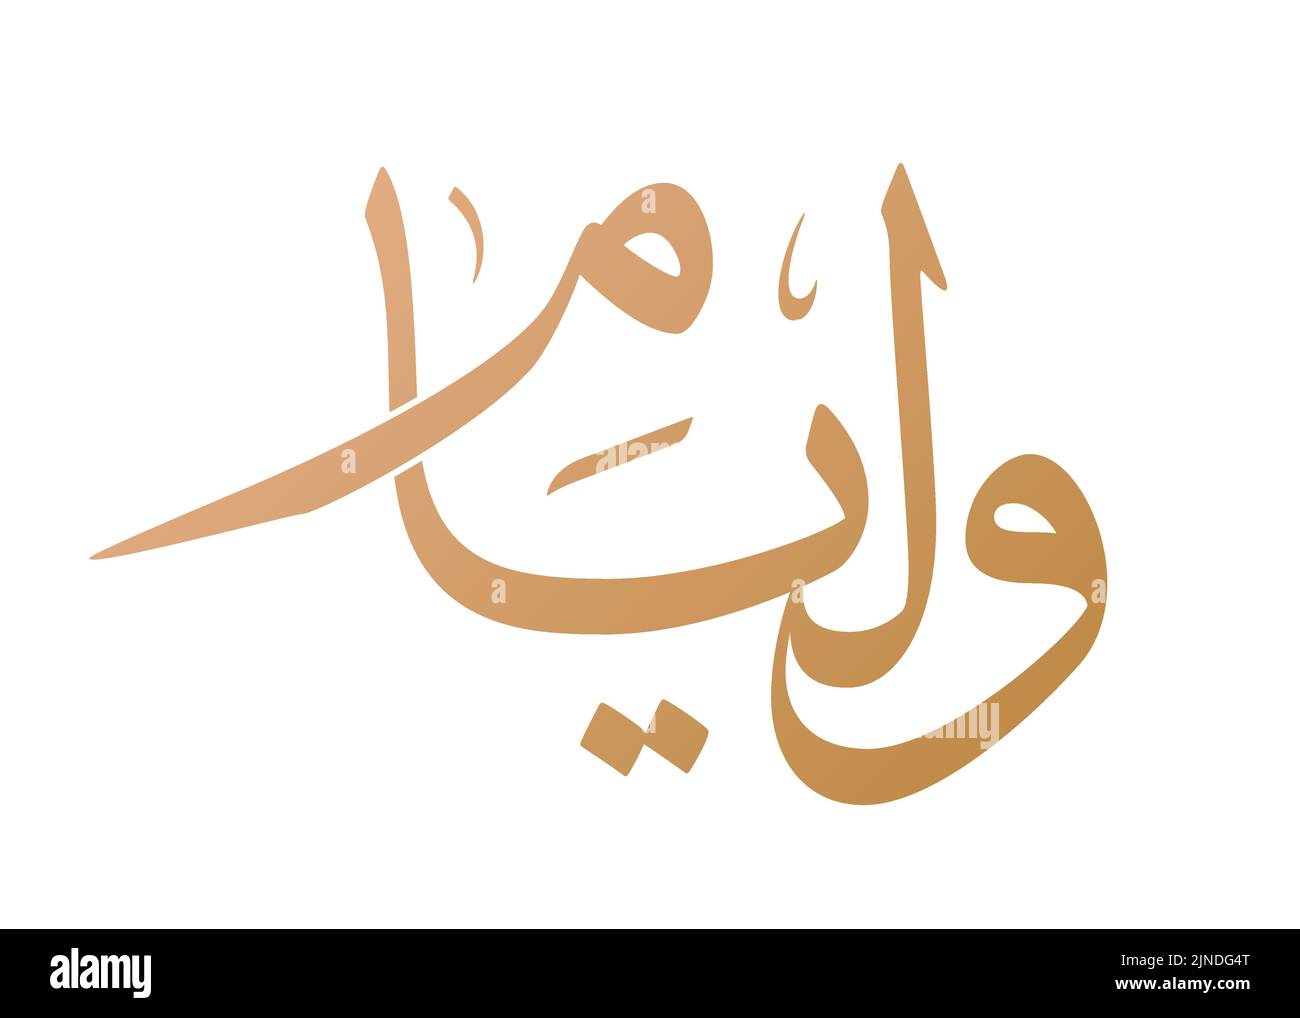 Nom de William calligraphie arabe dans le vecteur de script Thuluth. Convient pour collier, tatouage, etc. Traduction: 'William' Illustration de Vecteur